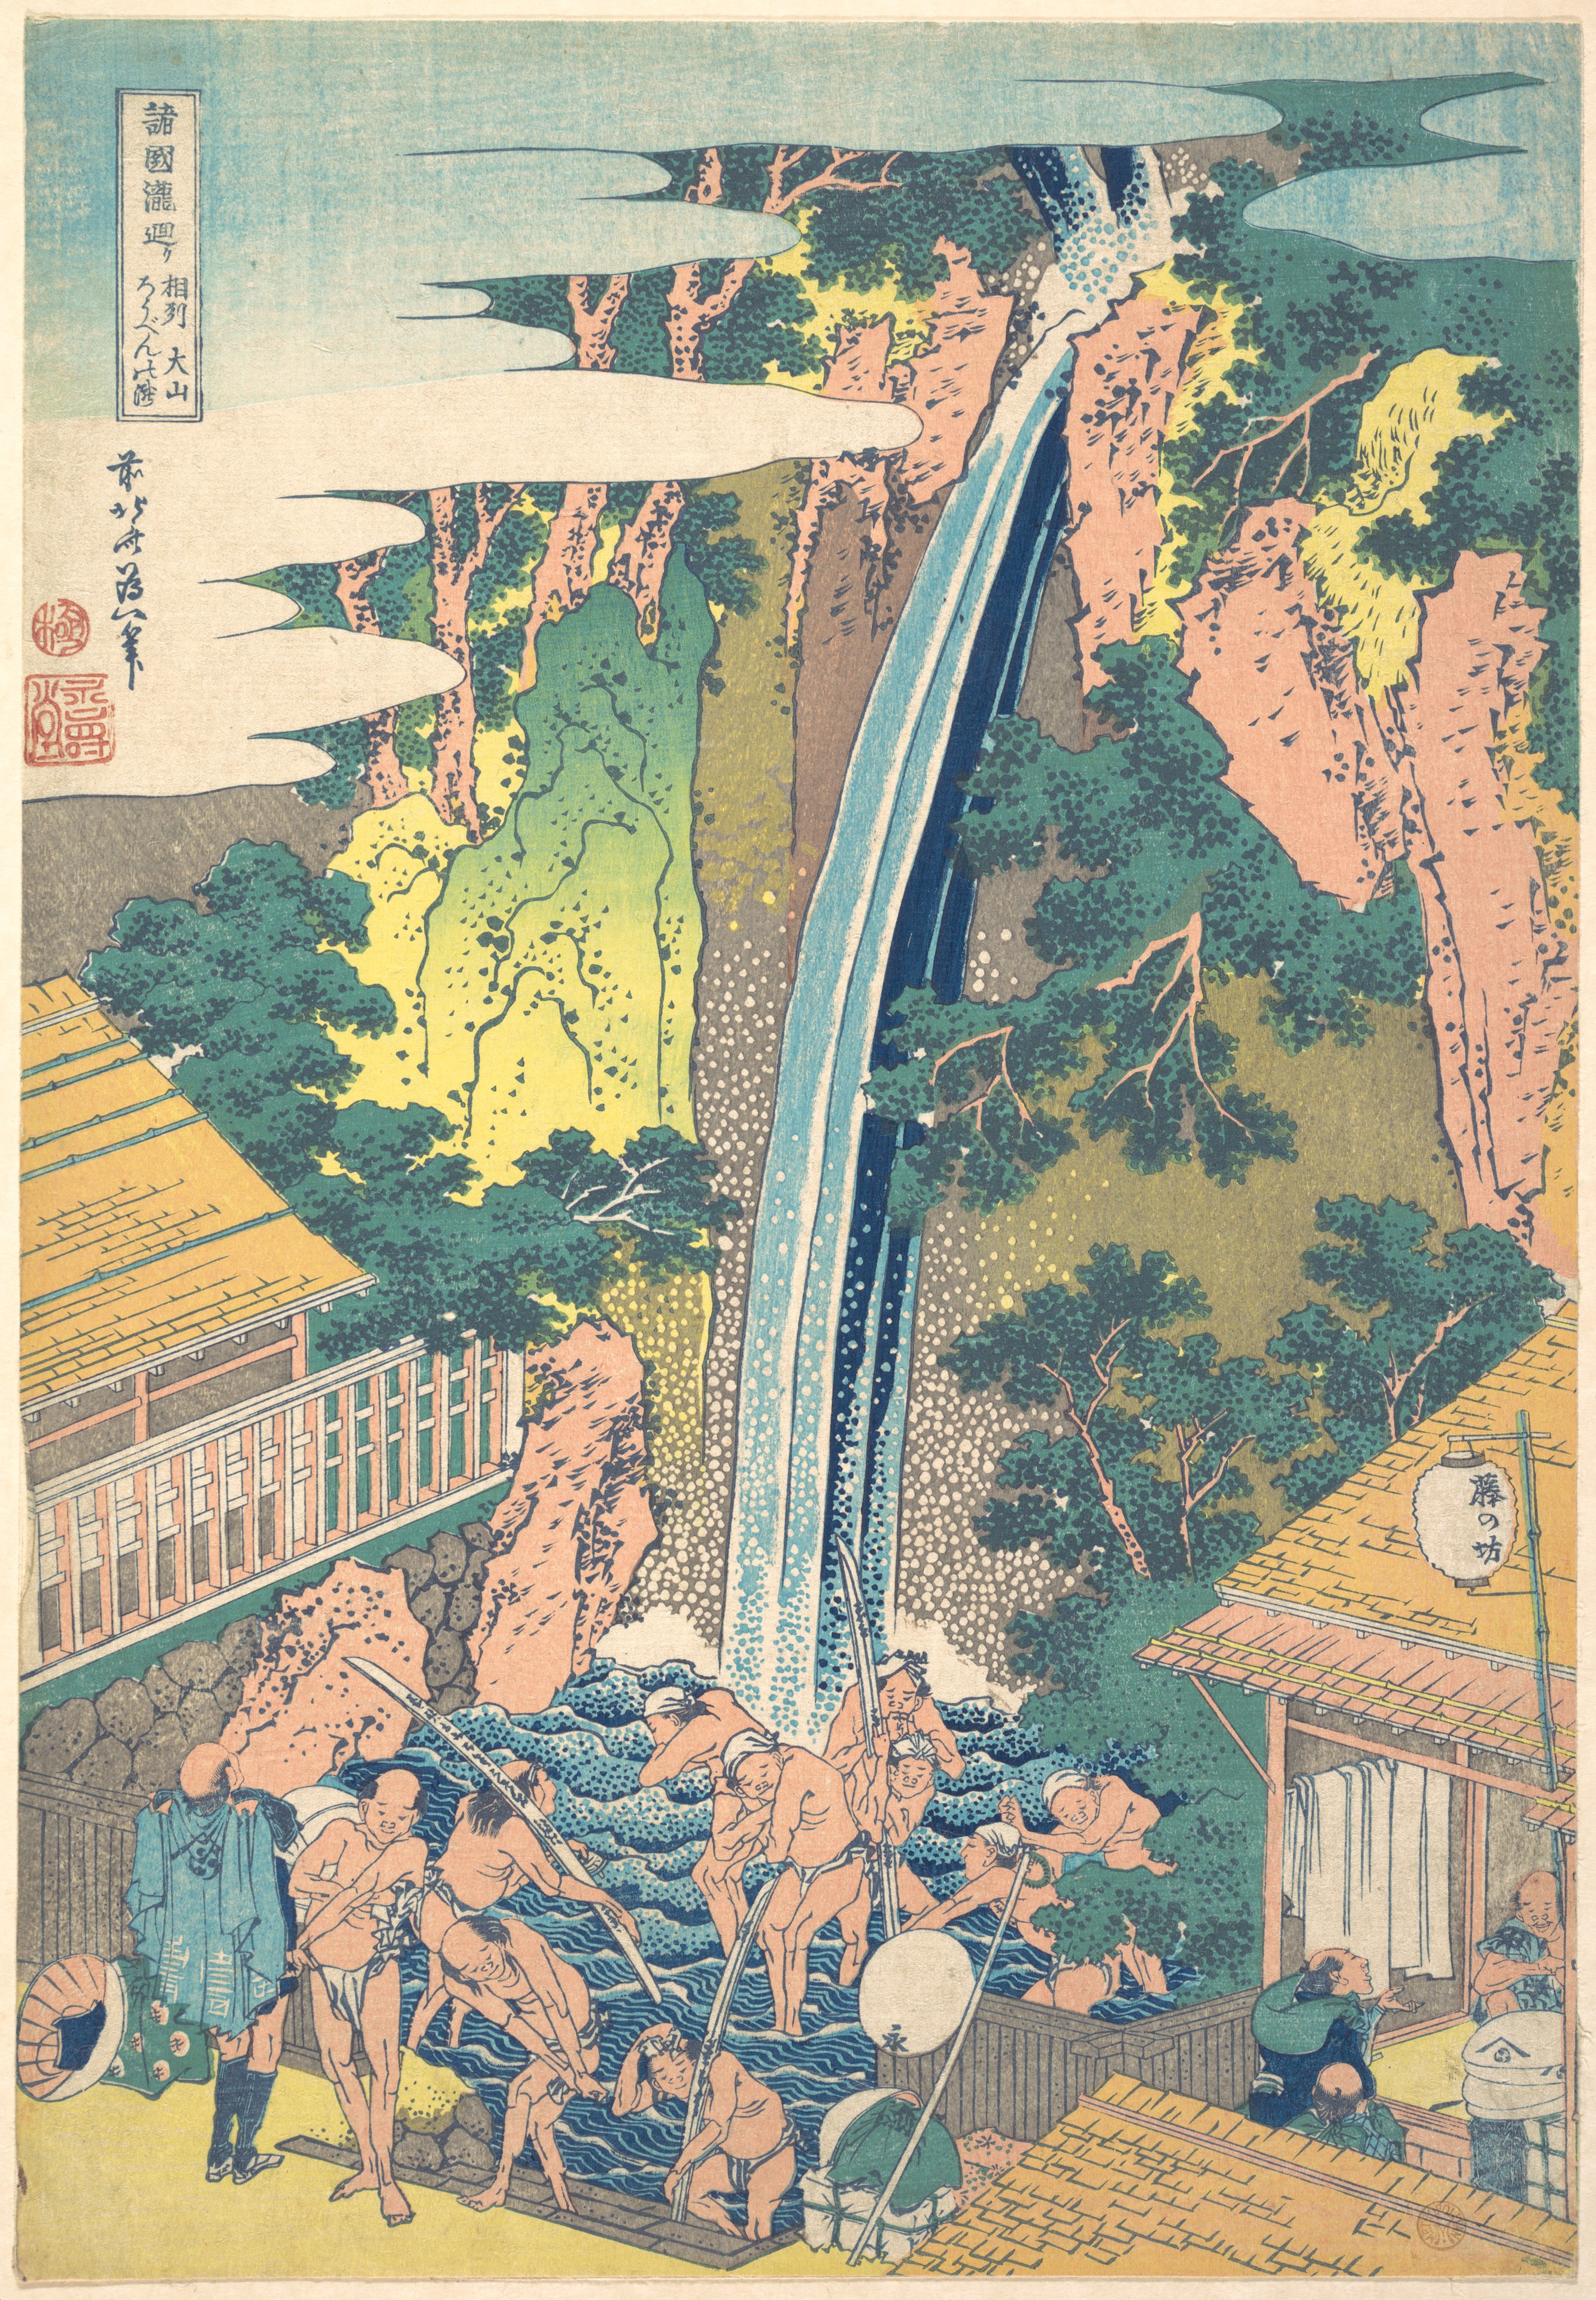 Katsushika Hokusai Artworks collected in Metmuseum